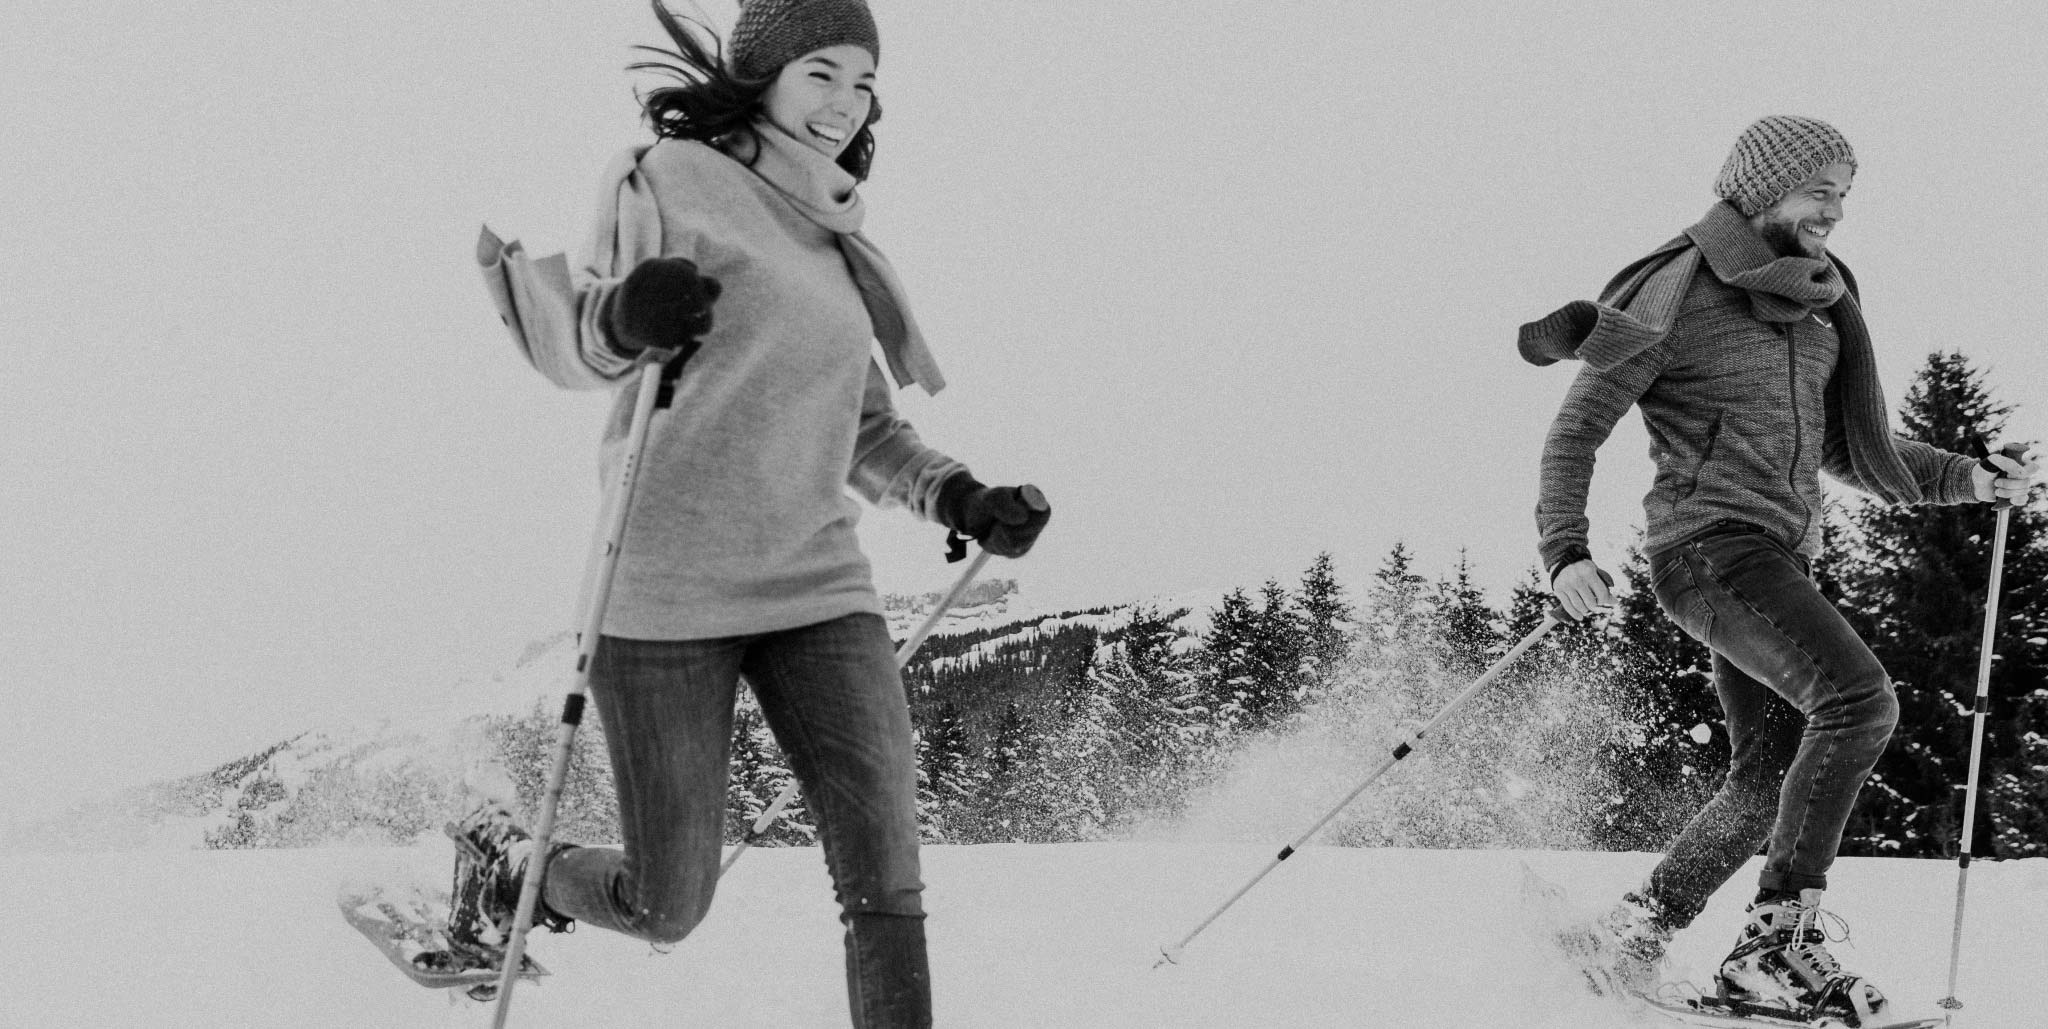 Manuel und Magdalena beim rennen in Schneeschuhen schwarz-weiß